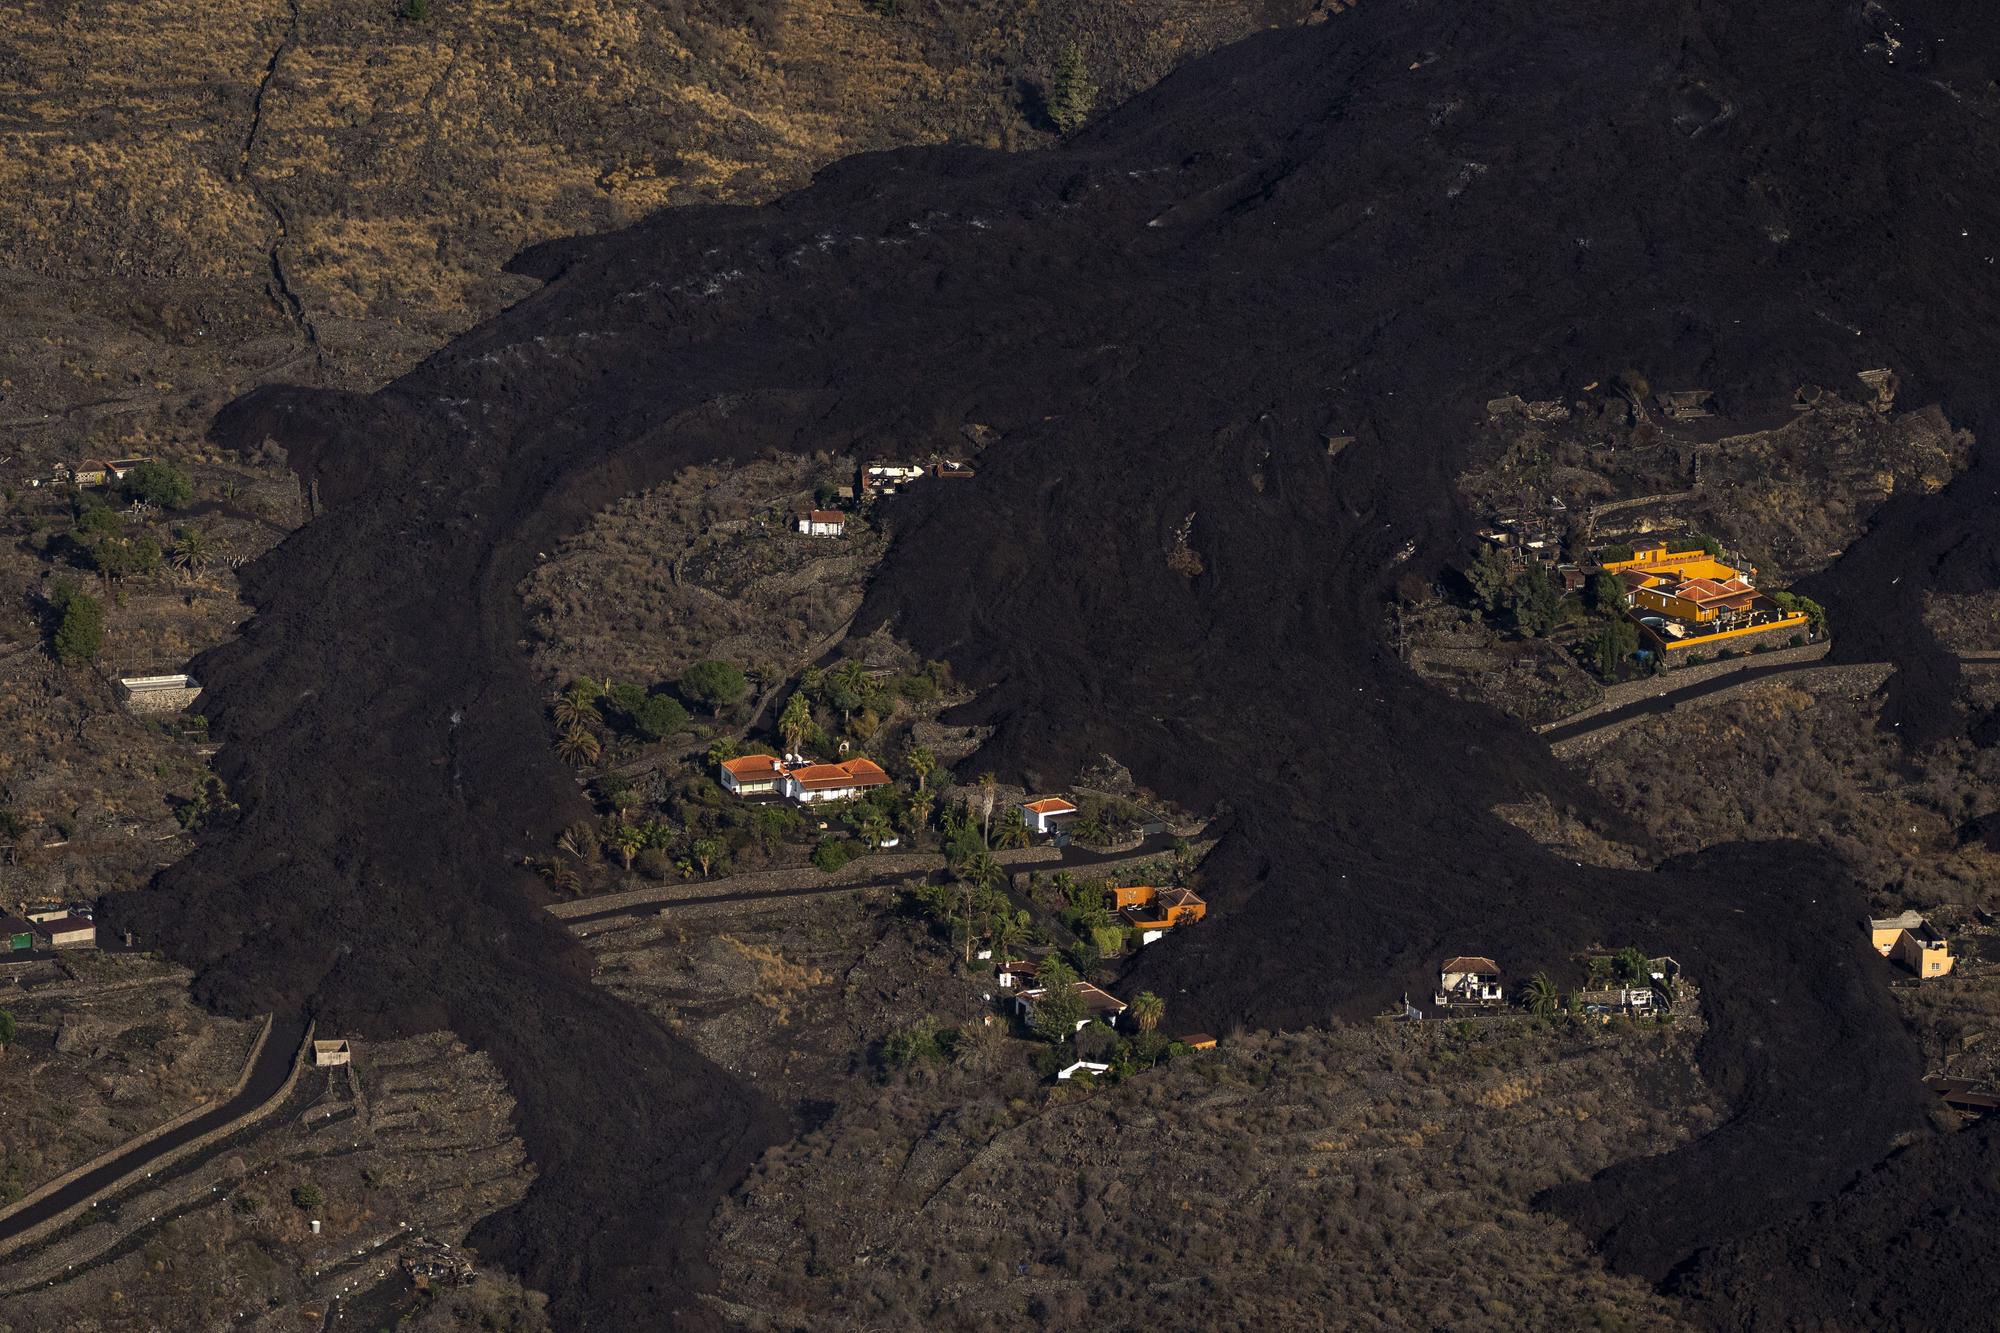 Erupción volcánica: Imágenes aéreas de la zona afectada